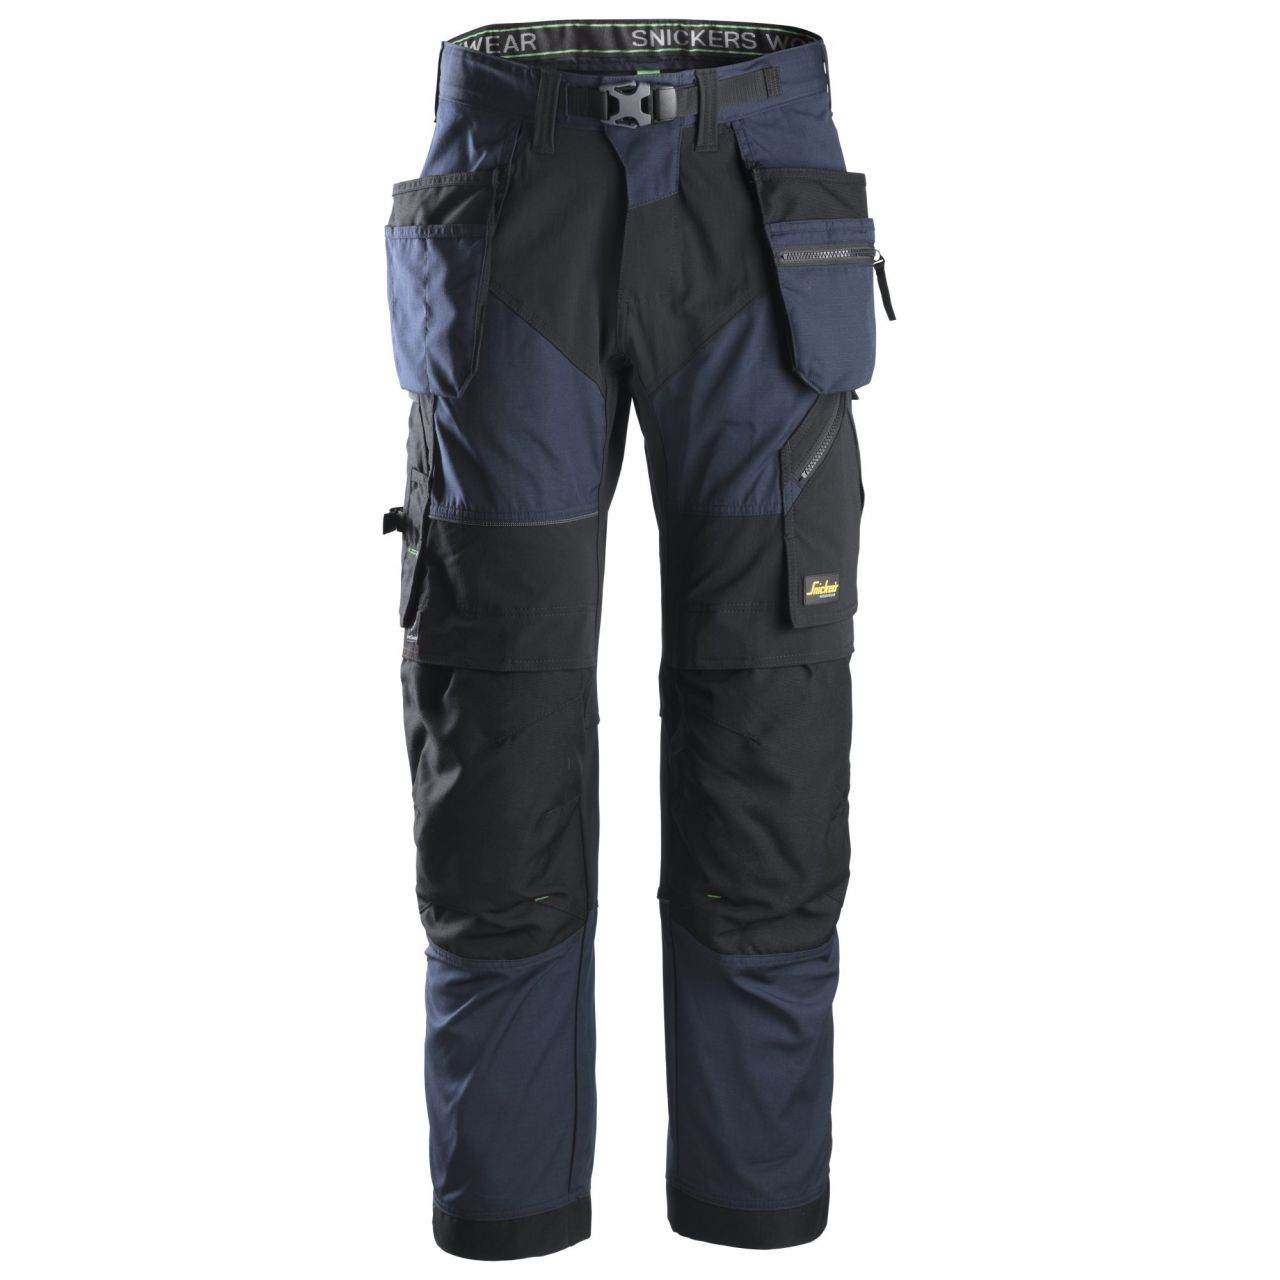 6902 Pantalón largo FlexiWork+ con bolsillos flotantes azul marino-negro talla 58